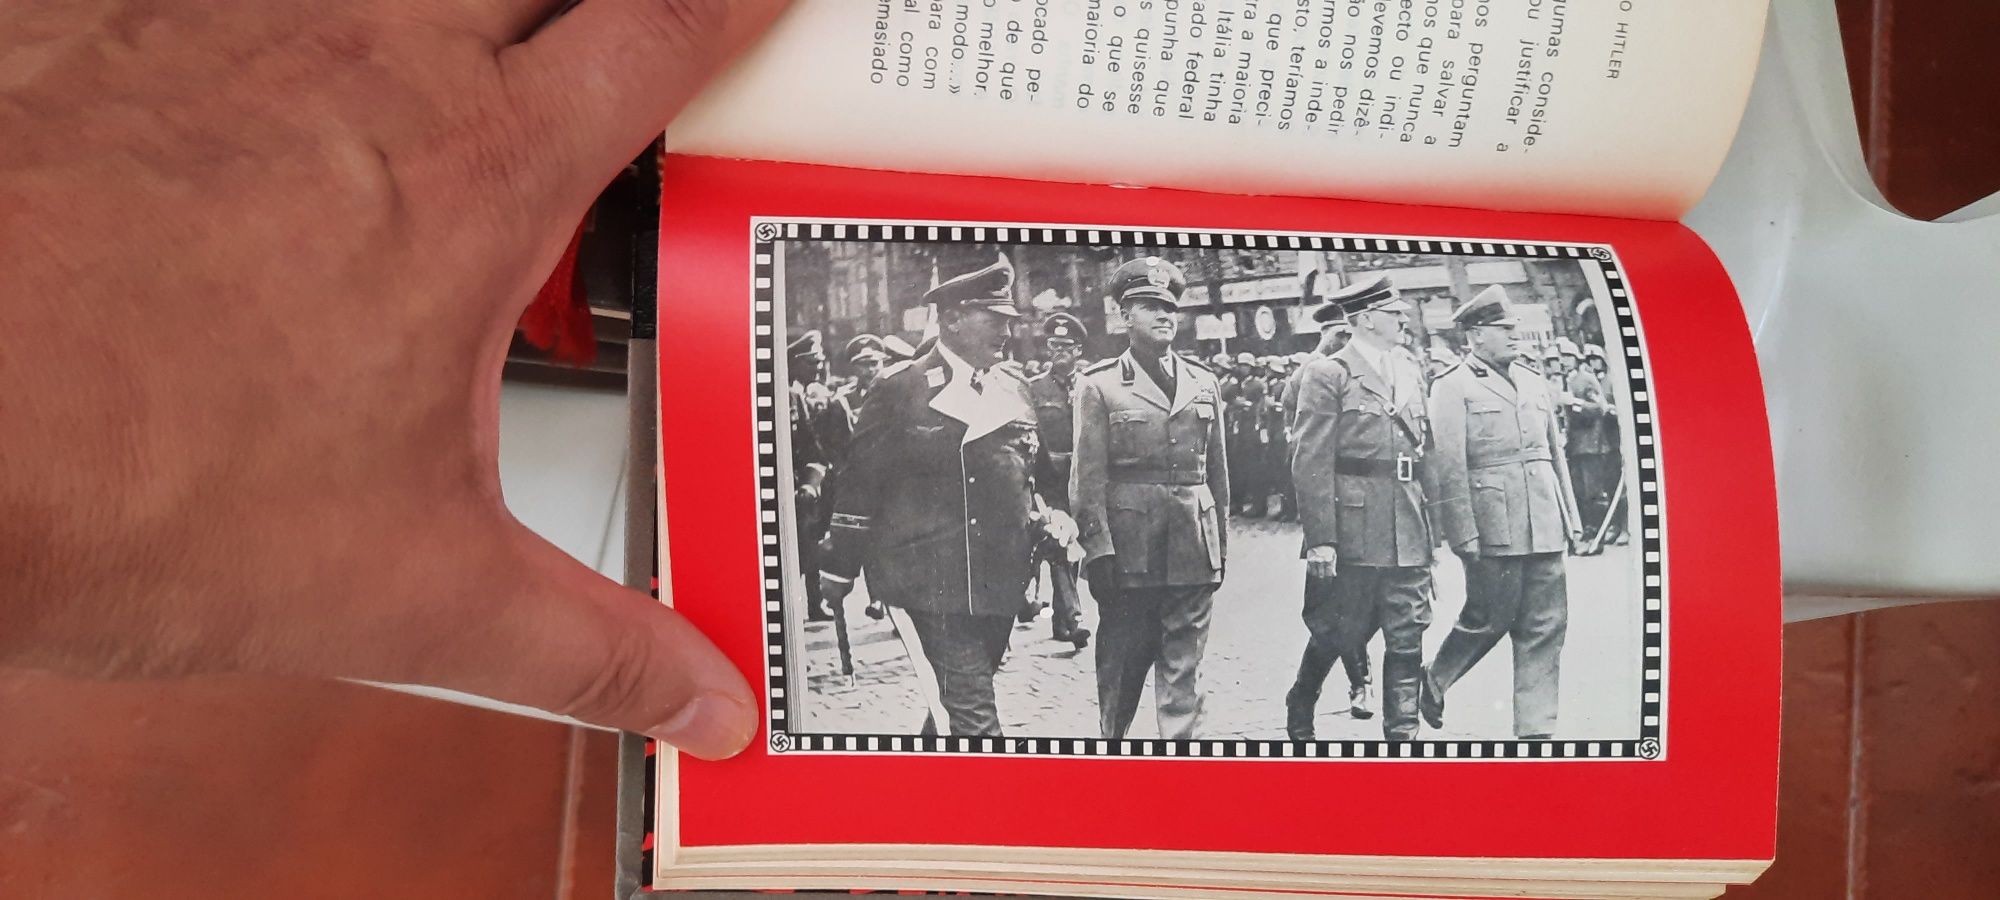 Coleção "A vida fantástica de Adolf Hitler"